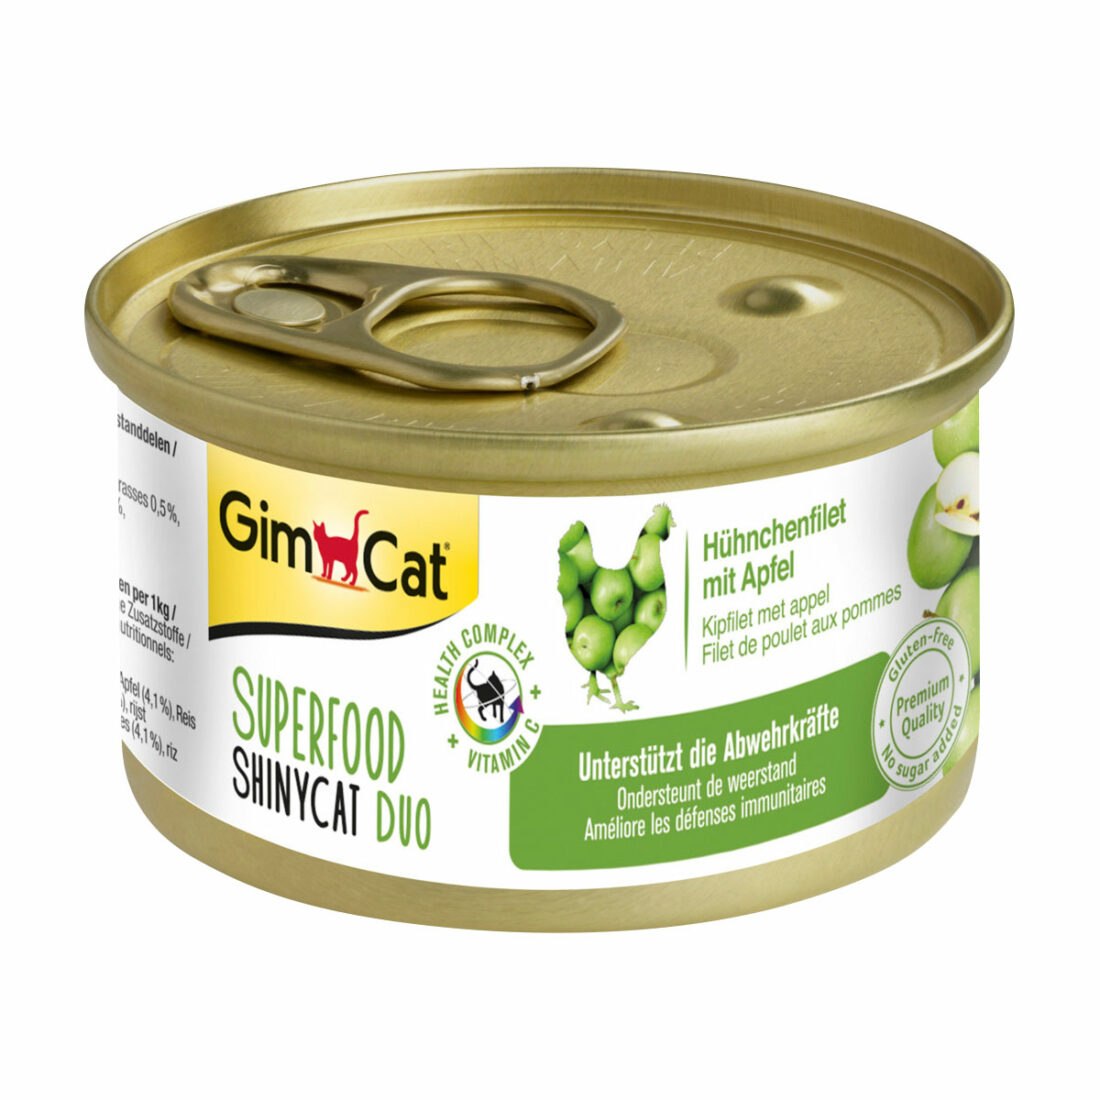 GimCat Superfood ShinyCat Duo kuřecí filet s